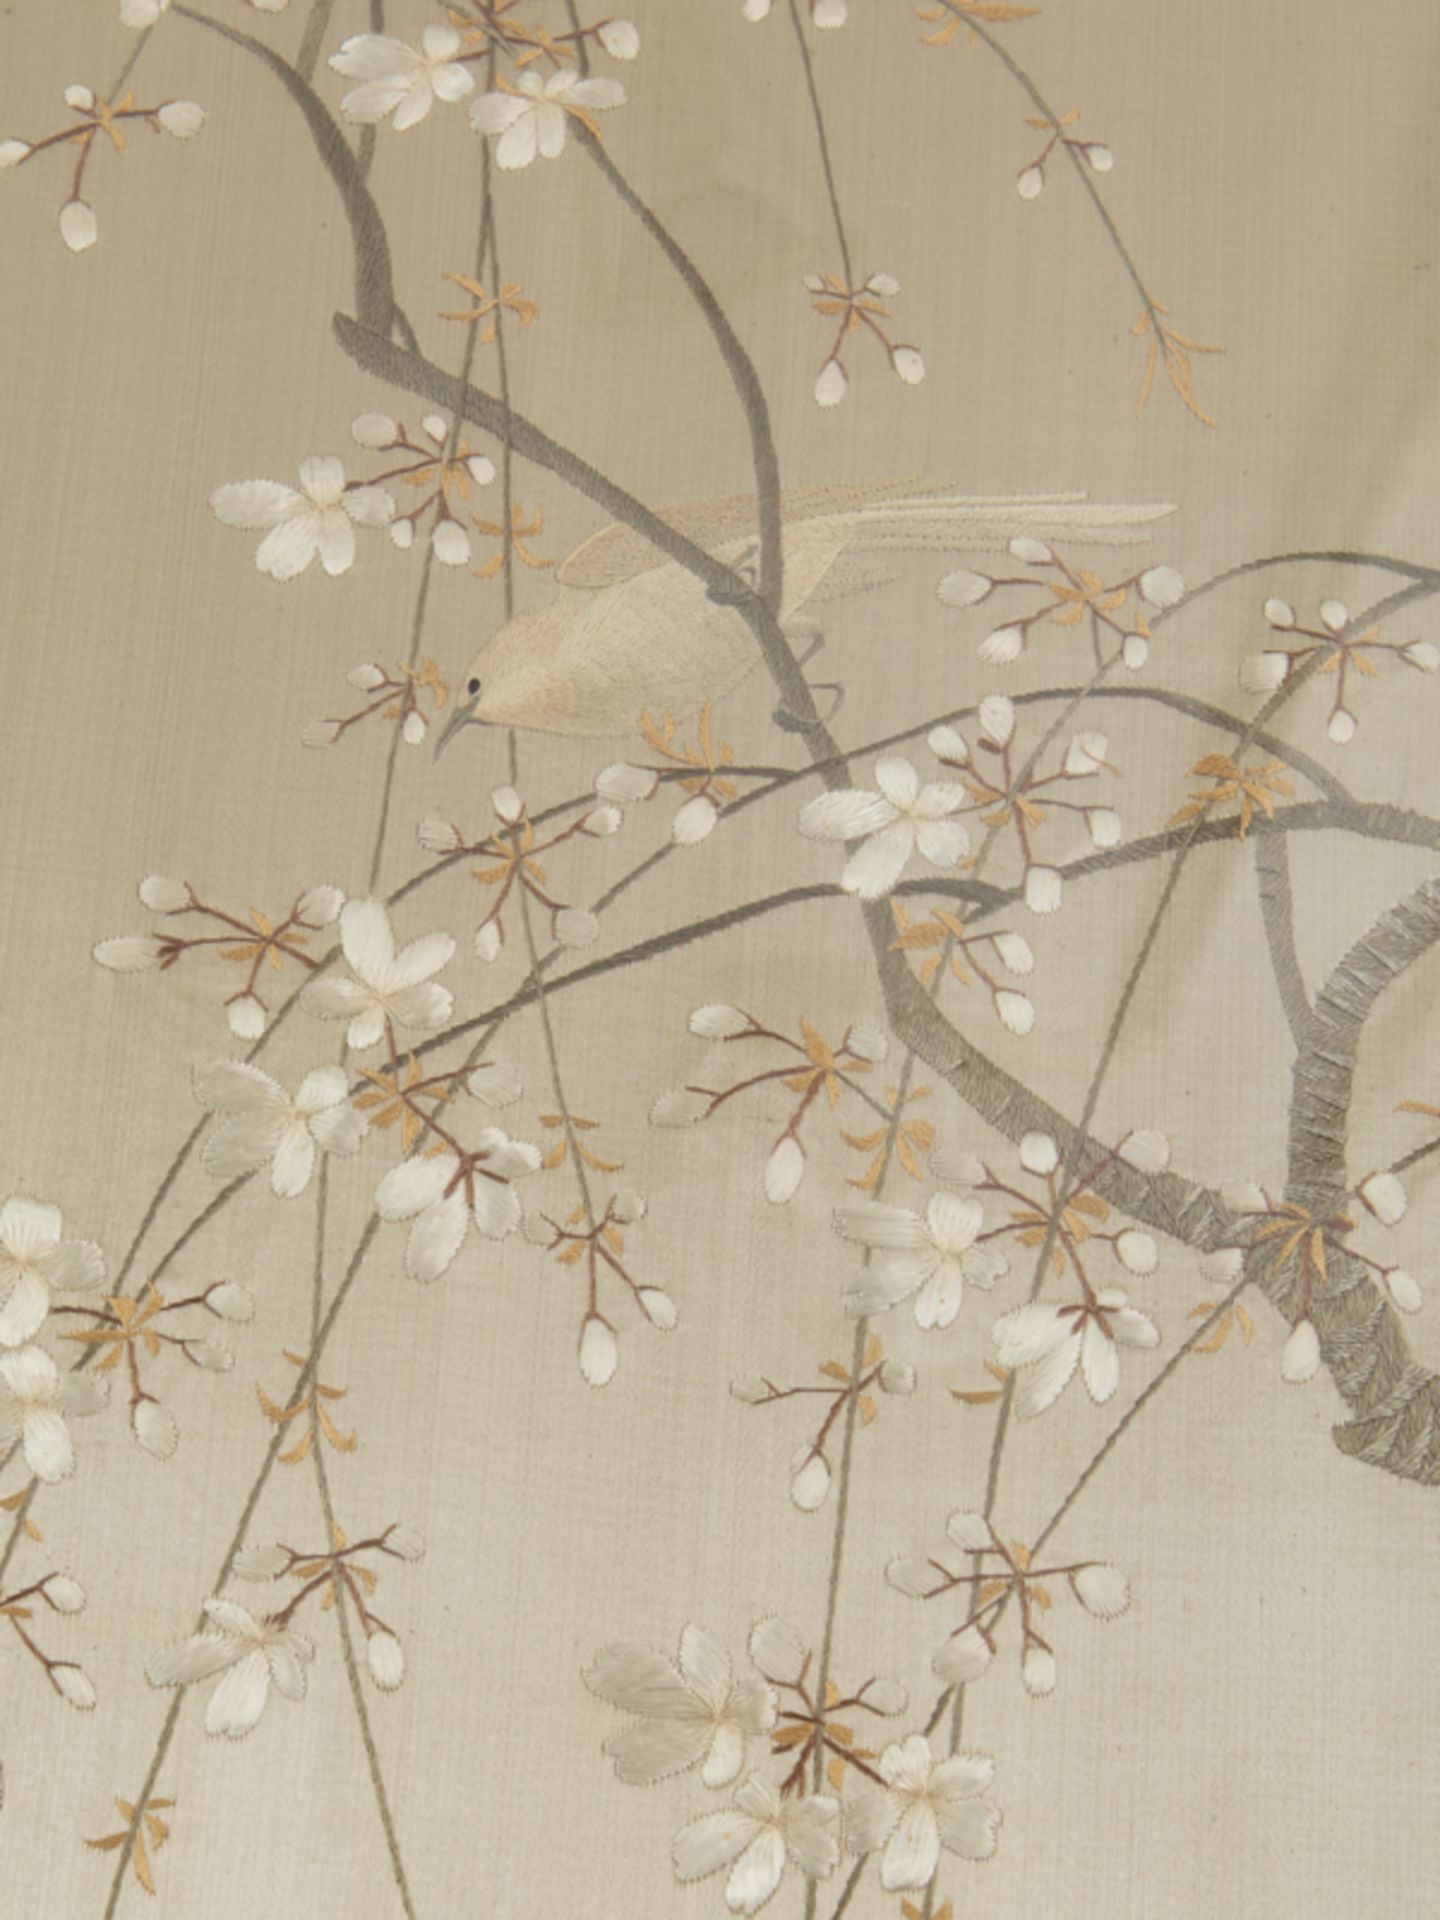 Singvögel in Blütenzweigen, Seidenbild, Japan, Meiji Zeit. - Image 7 of 10